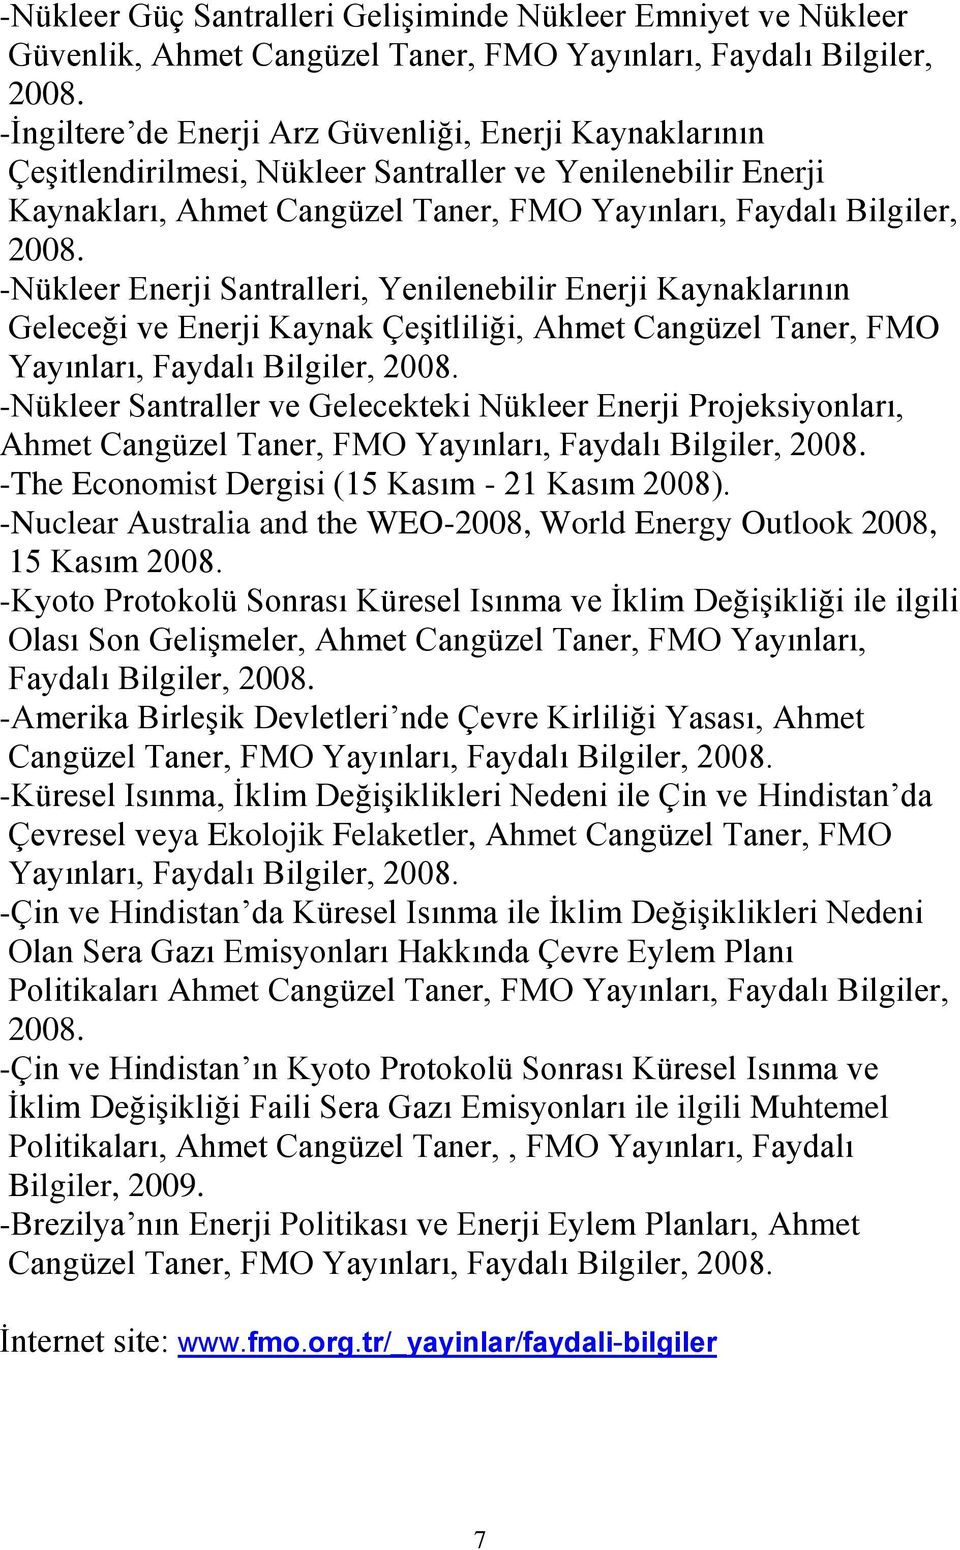 -Nükleer Enerji Santralleri, Yenilenebilir Enerji Kaynaklarının Geleceği ve Enerji Kaynak Çeşitliliği, Ahmet Cangüzel Taner, FMO Yayınları, Faydalı Bilgiler, 2008.